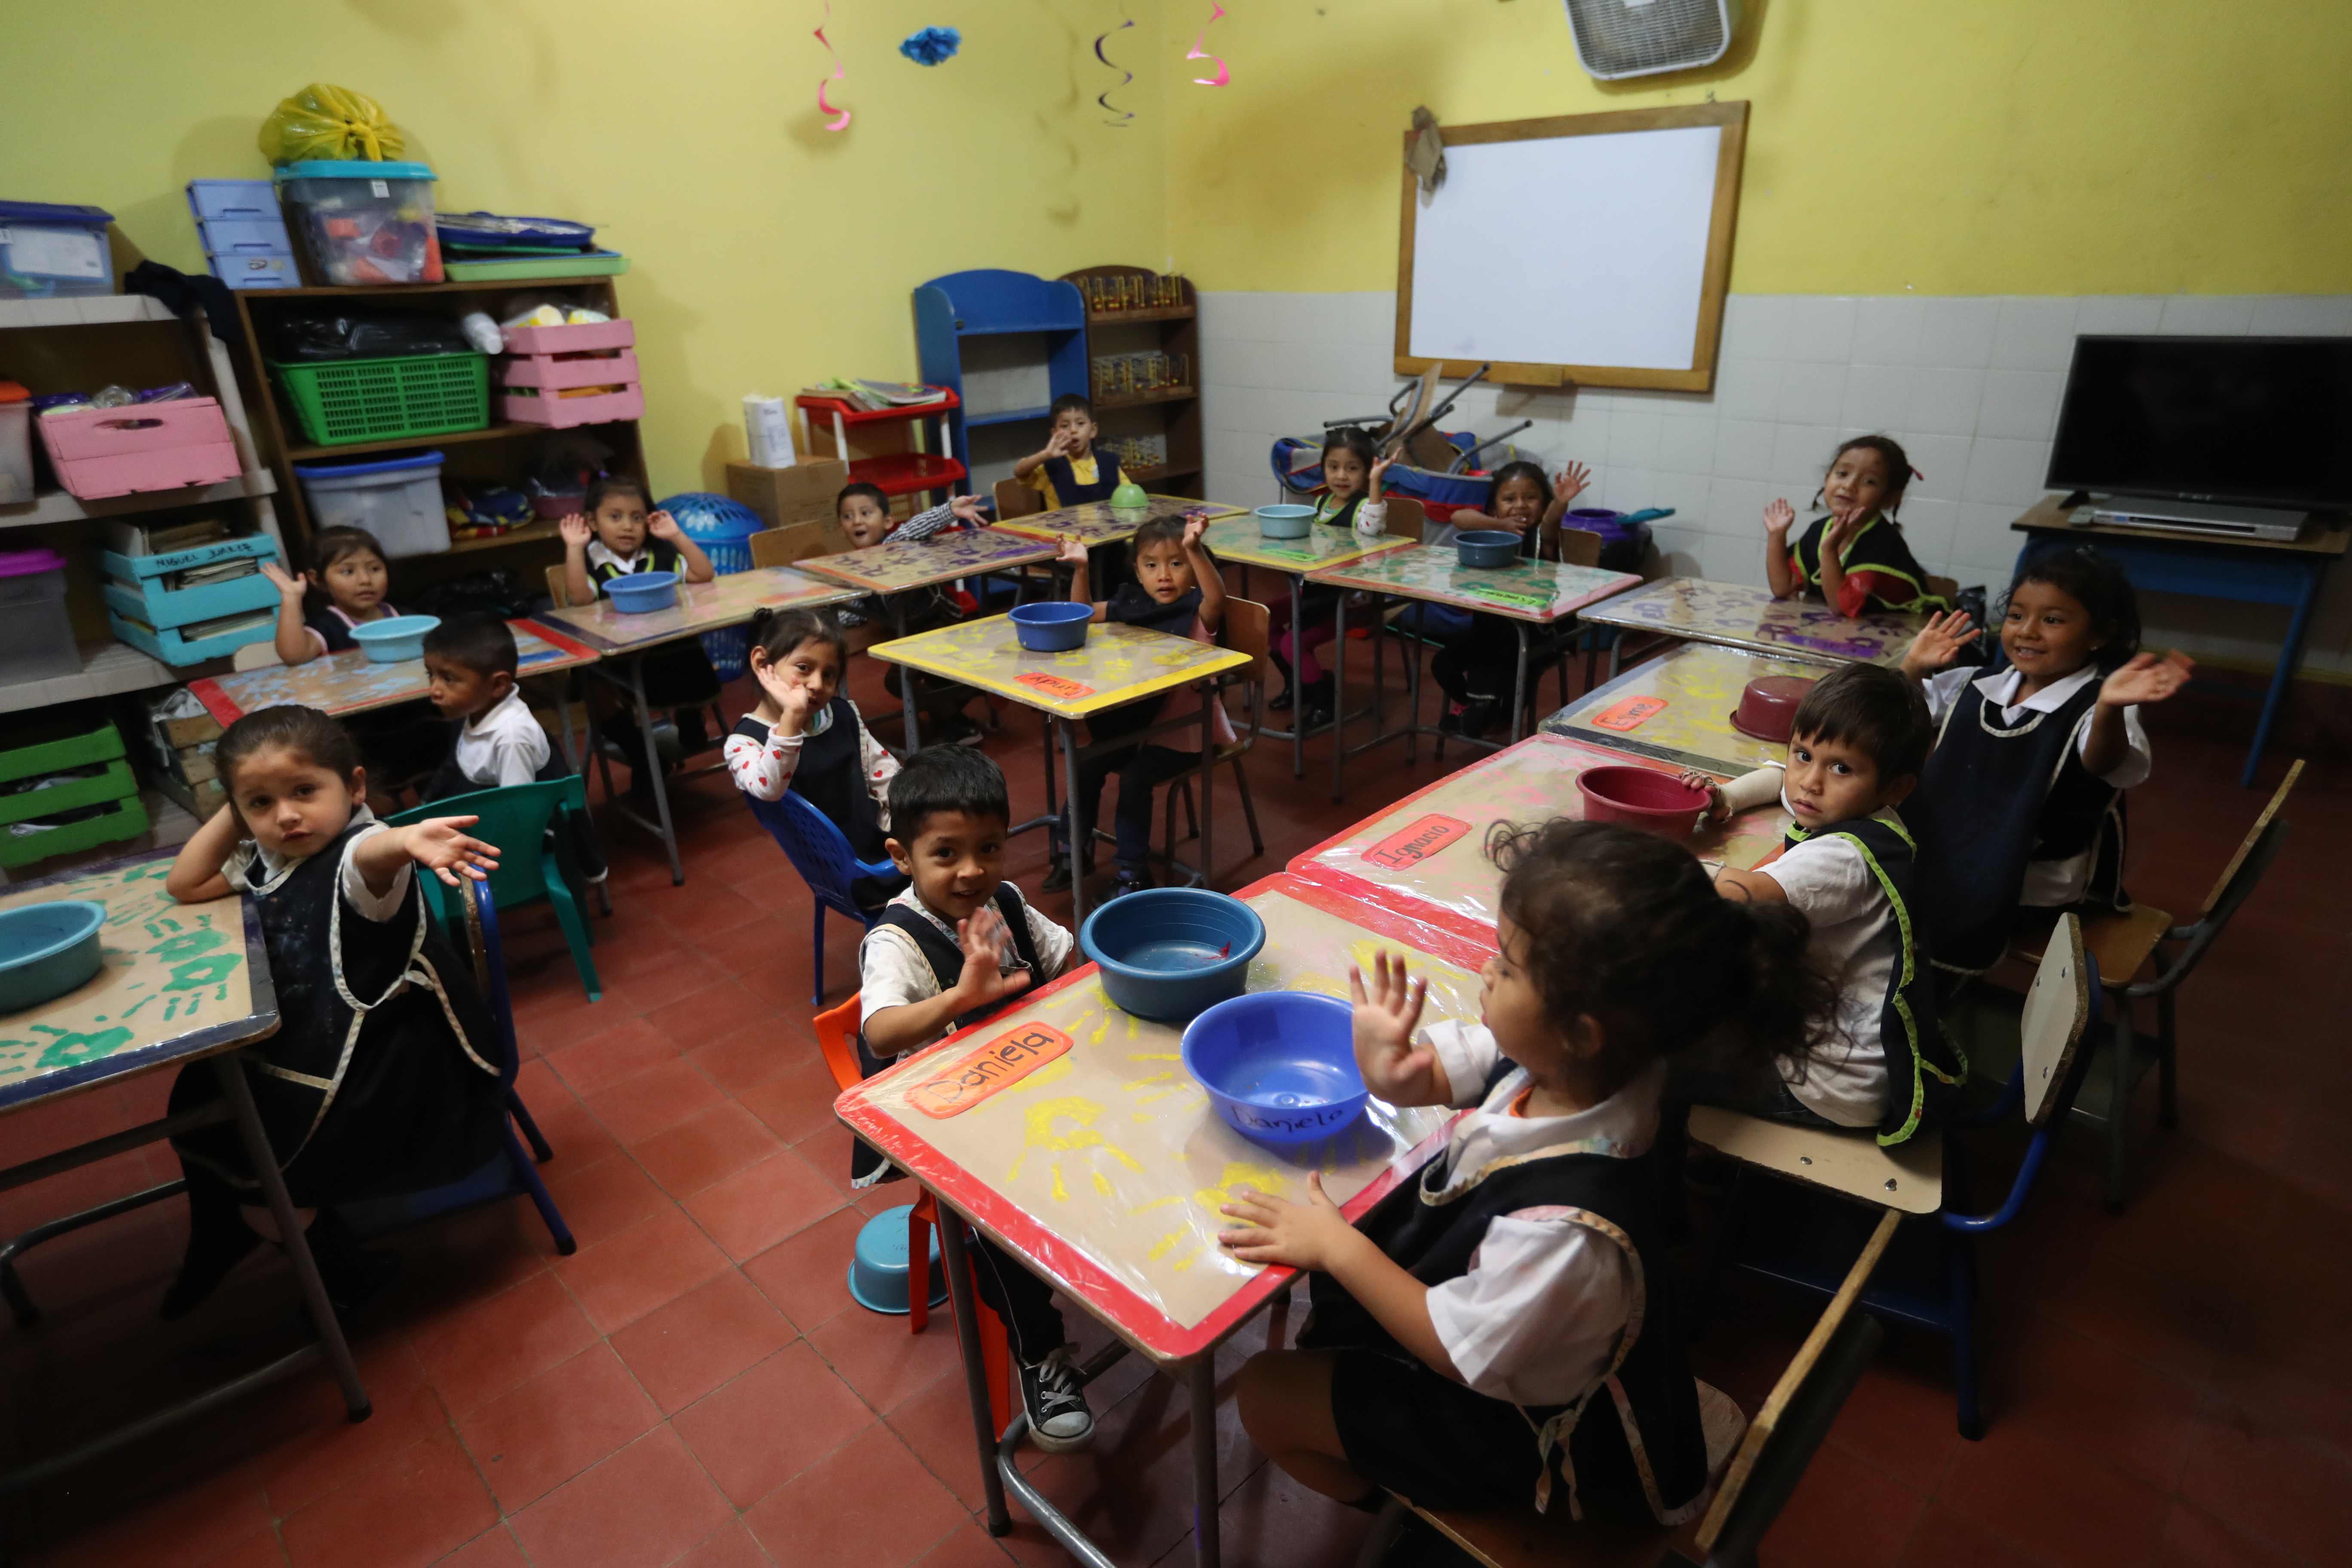 Los niños afectados por la erupción del volcán de Fuego el 3 de junio pasado, sobrepasan secuelas de la tragedia, y regresan a la escuela. (Foto Prensa Libre: Enrique Paredes) 